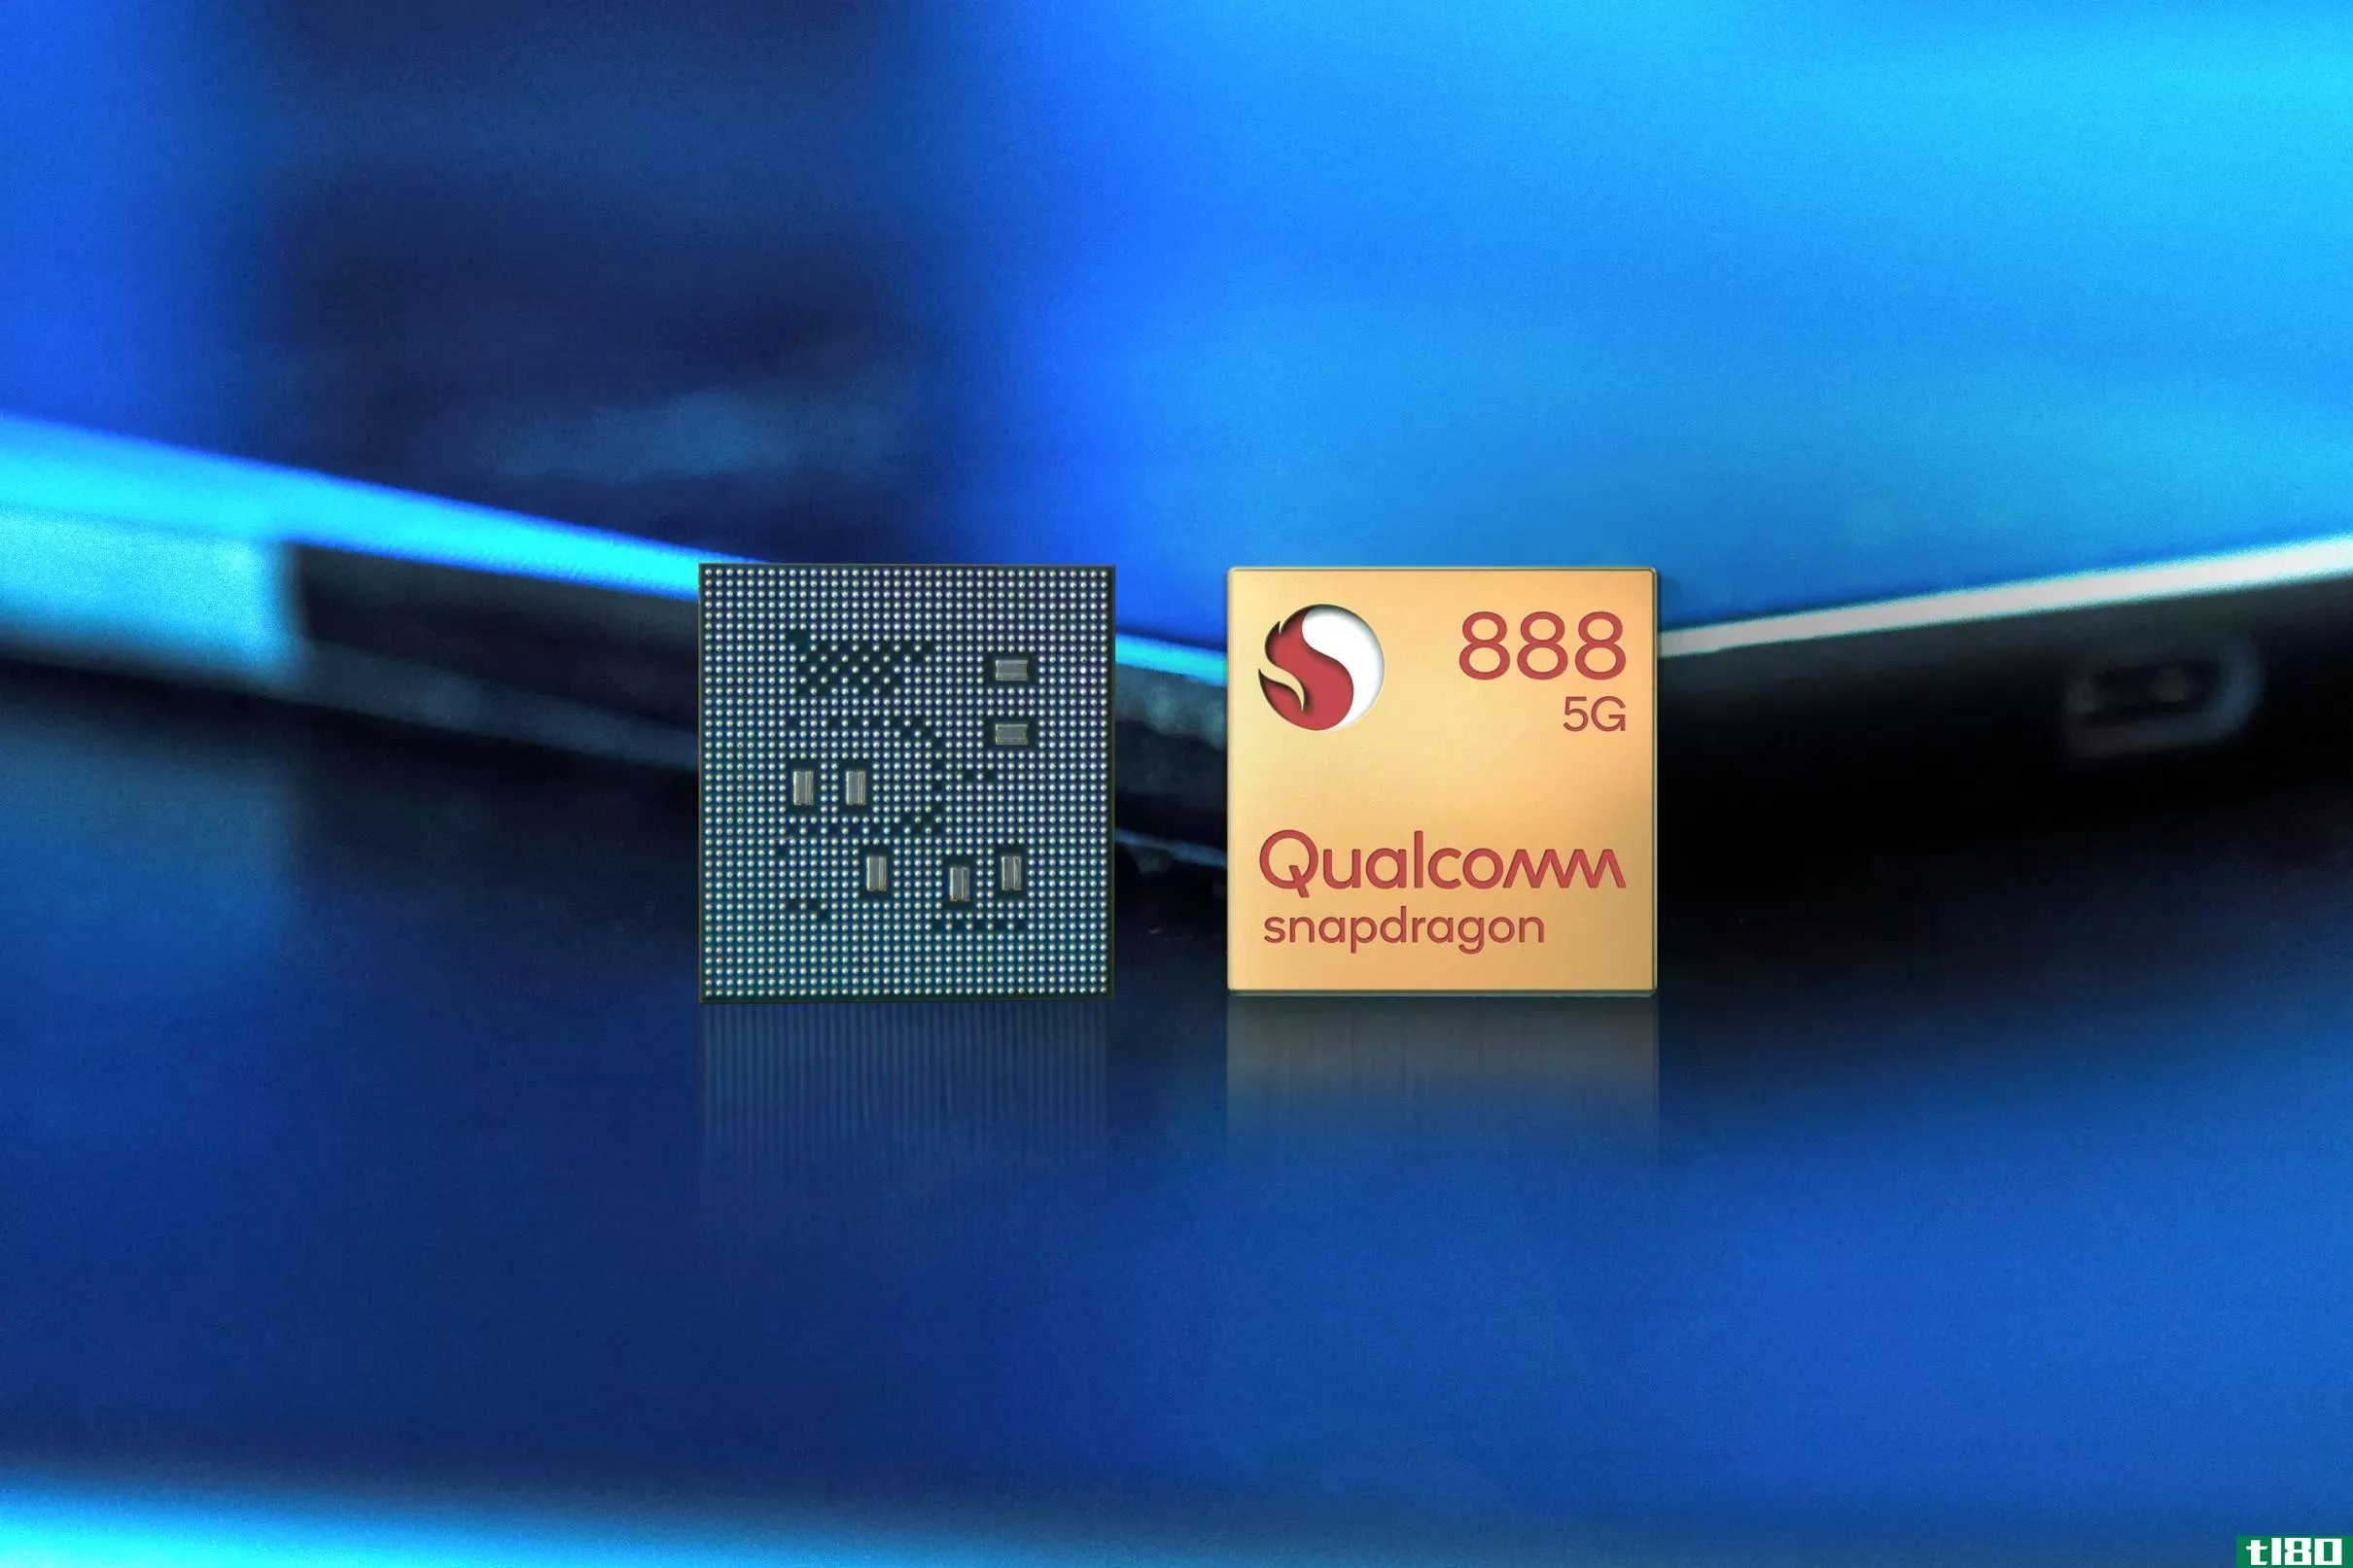 高通公司新推出的snapdragon 888处理器将为2021年的android旗舰提供动力